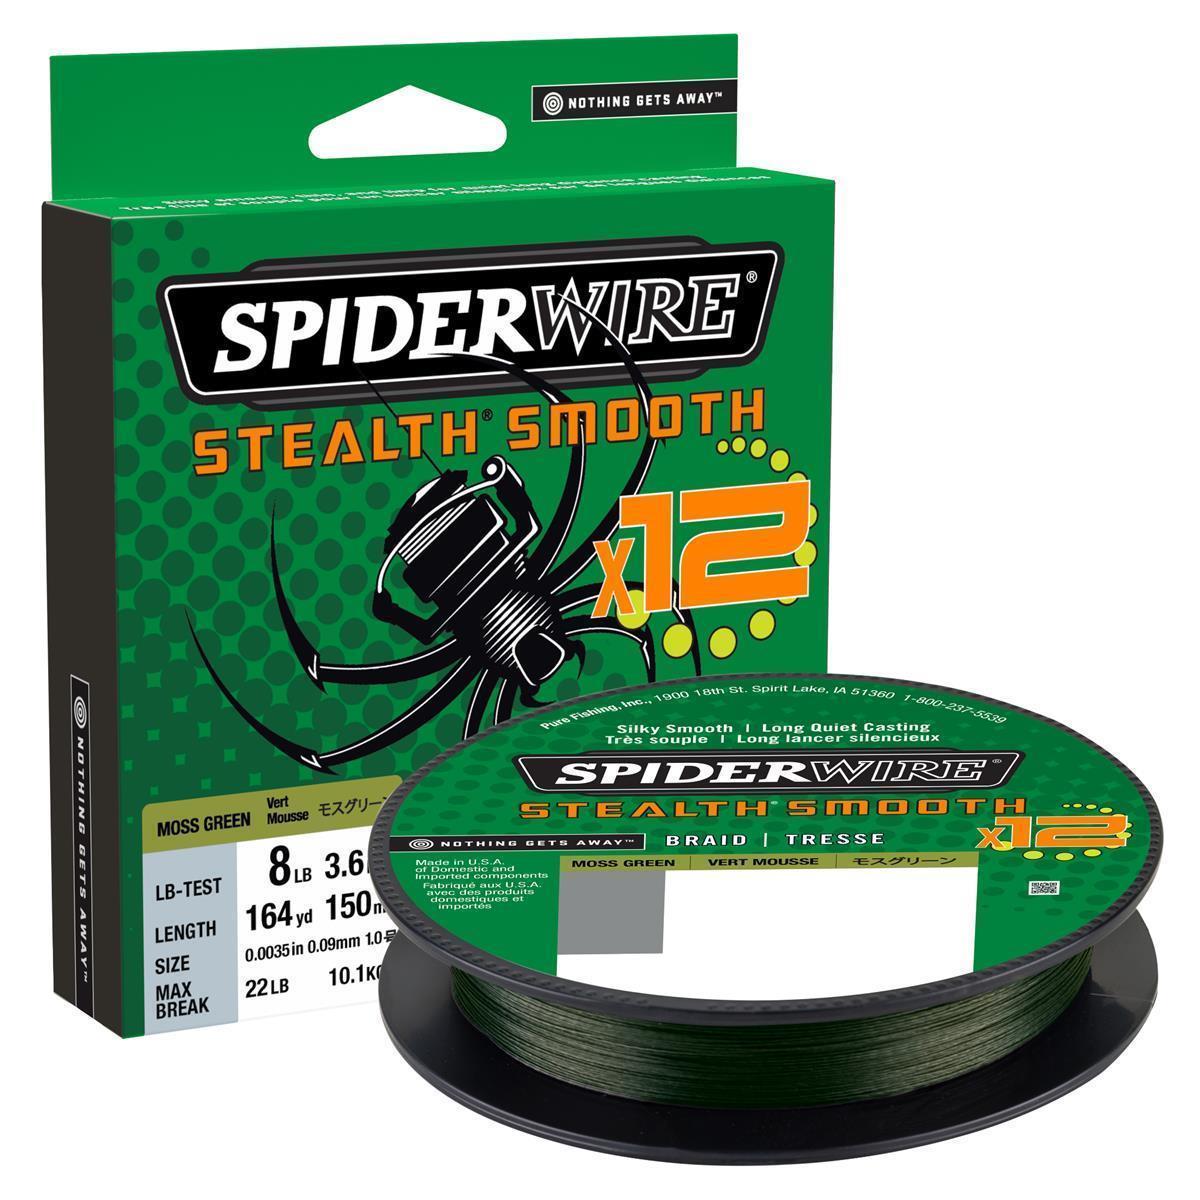 SpiderWire Stealth® Smooth 12 Braid; Moos Grenn; 0,13 mm; 12,7 Kg.; 150 m